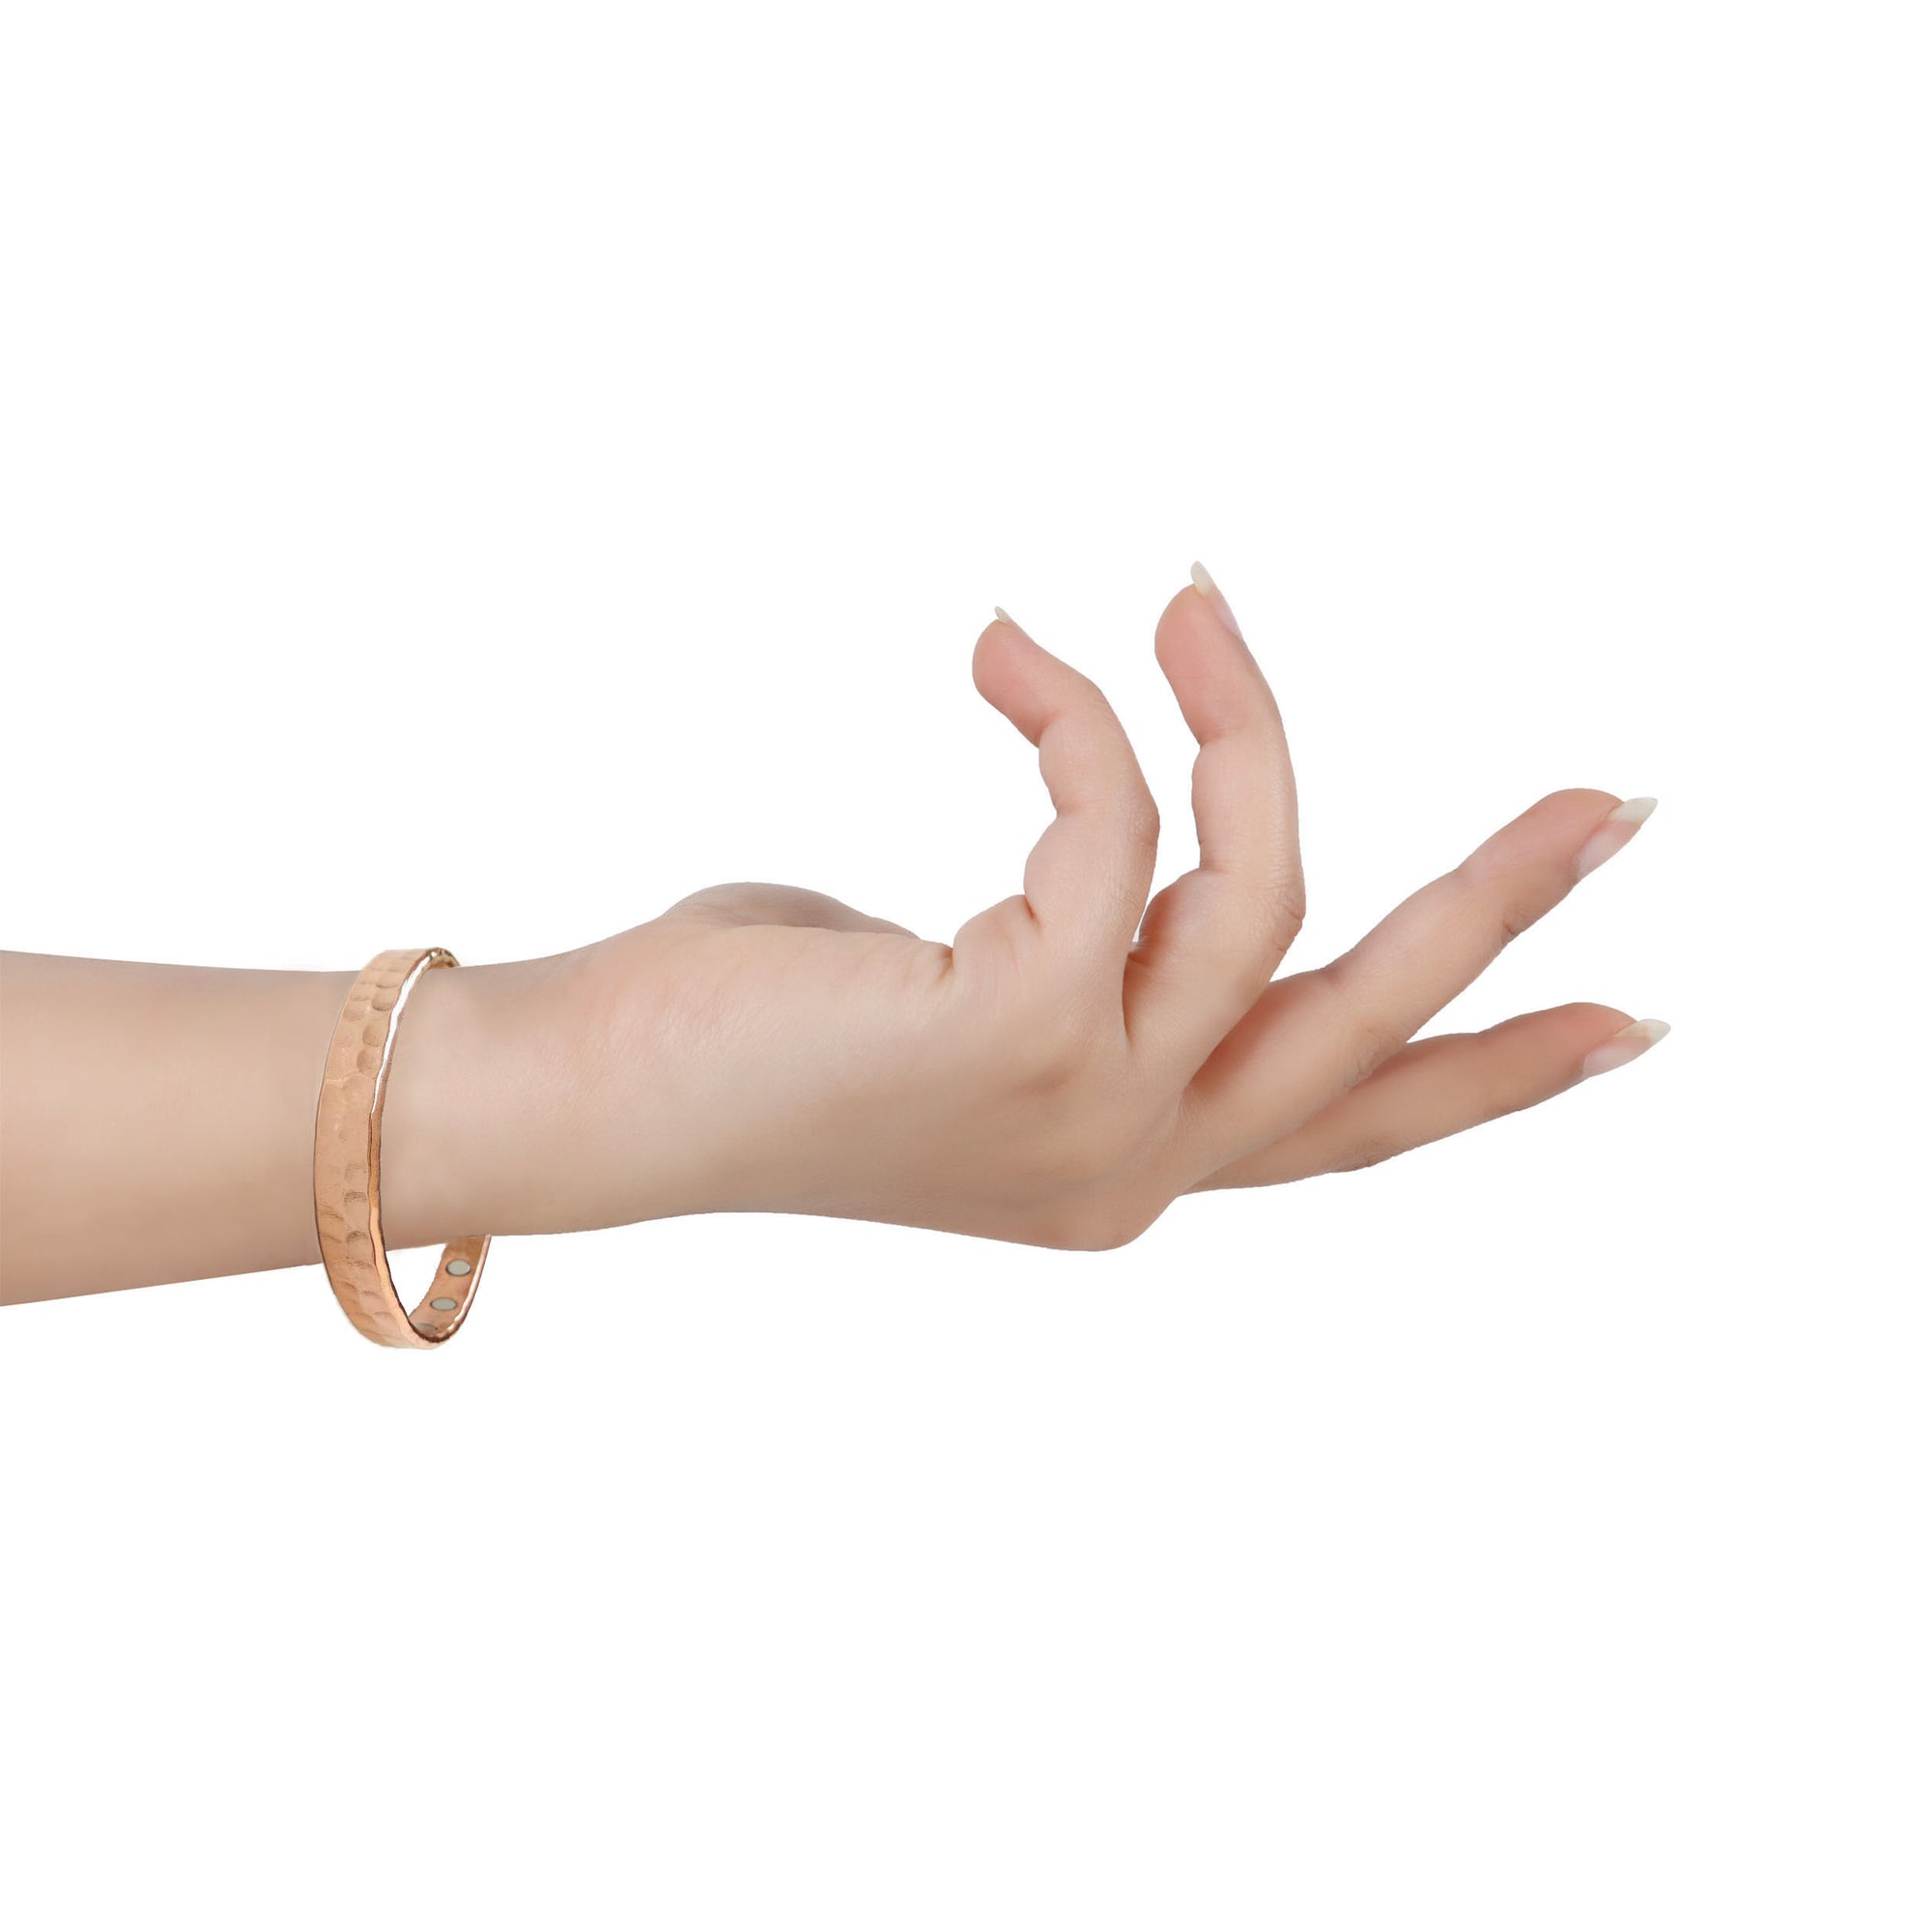 Magnetic copper bracelet worn on wrist